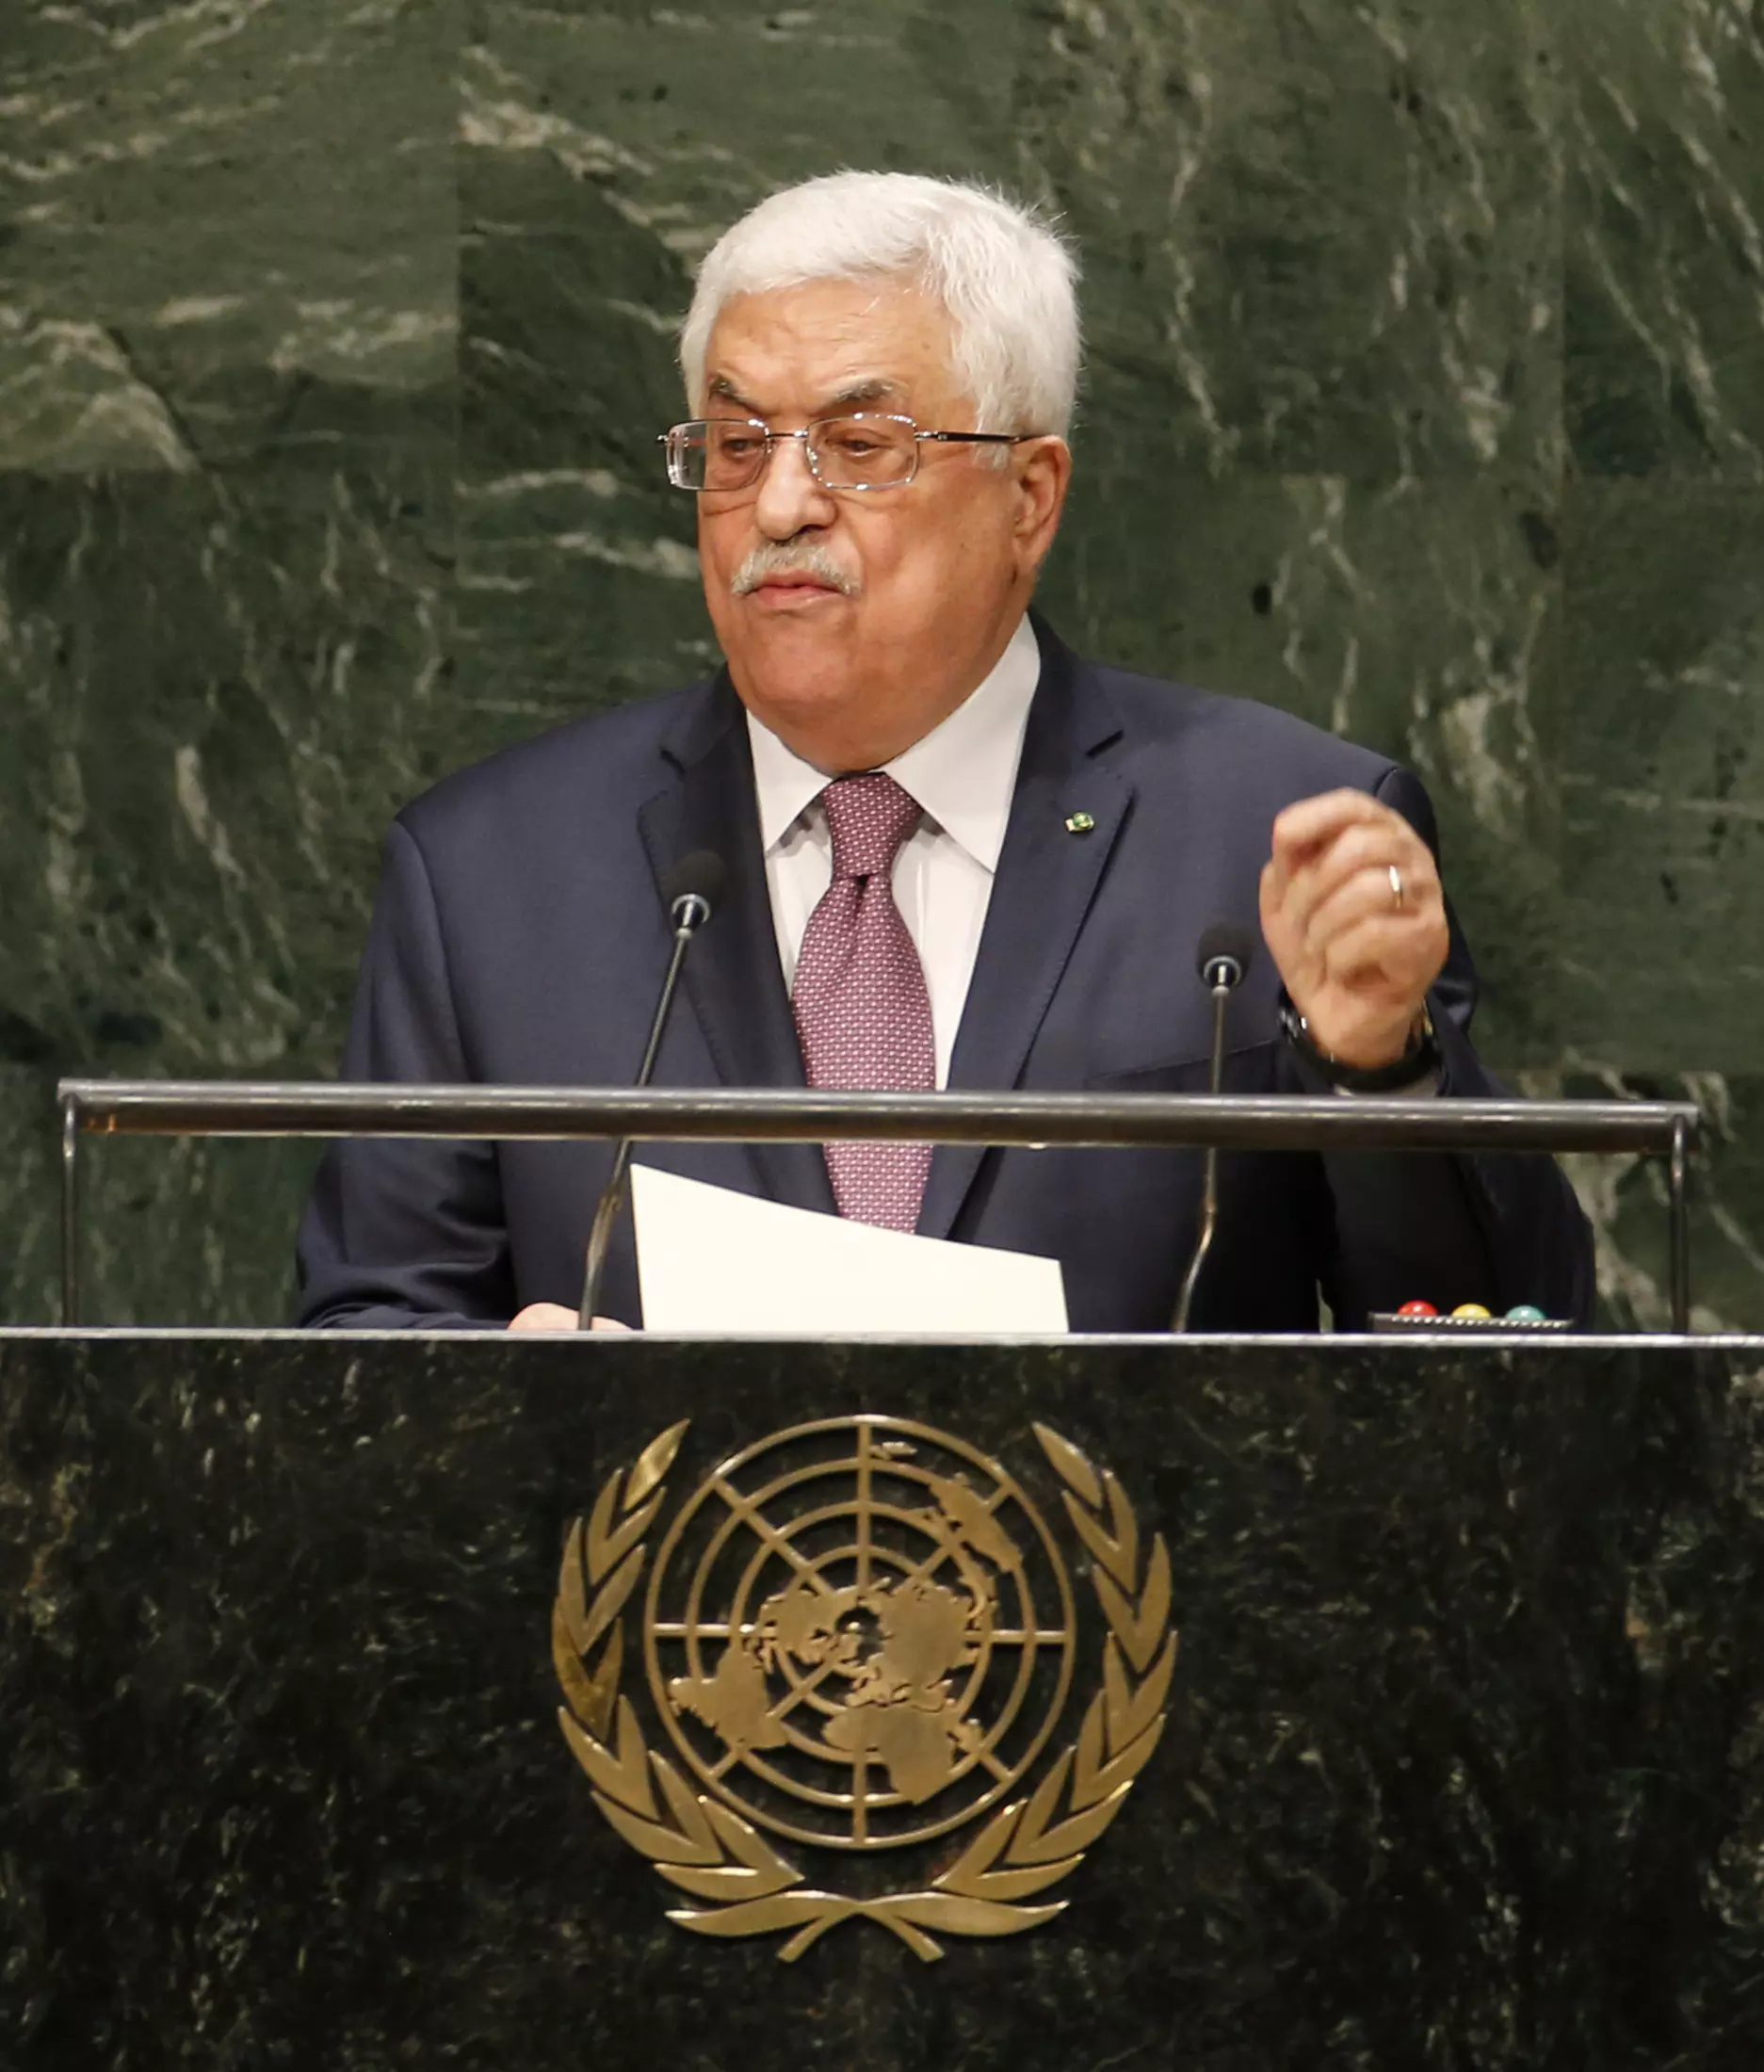 ישראל לא רצתה לשבת באותו שולחן עם אבו מאזן? יו"ר הרשות הפלסטינית בעצרת האו"ם